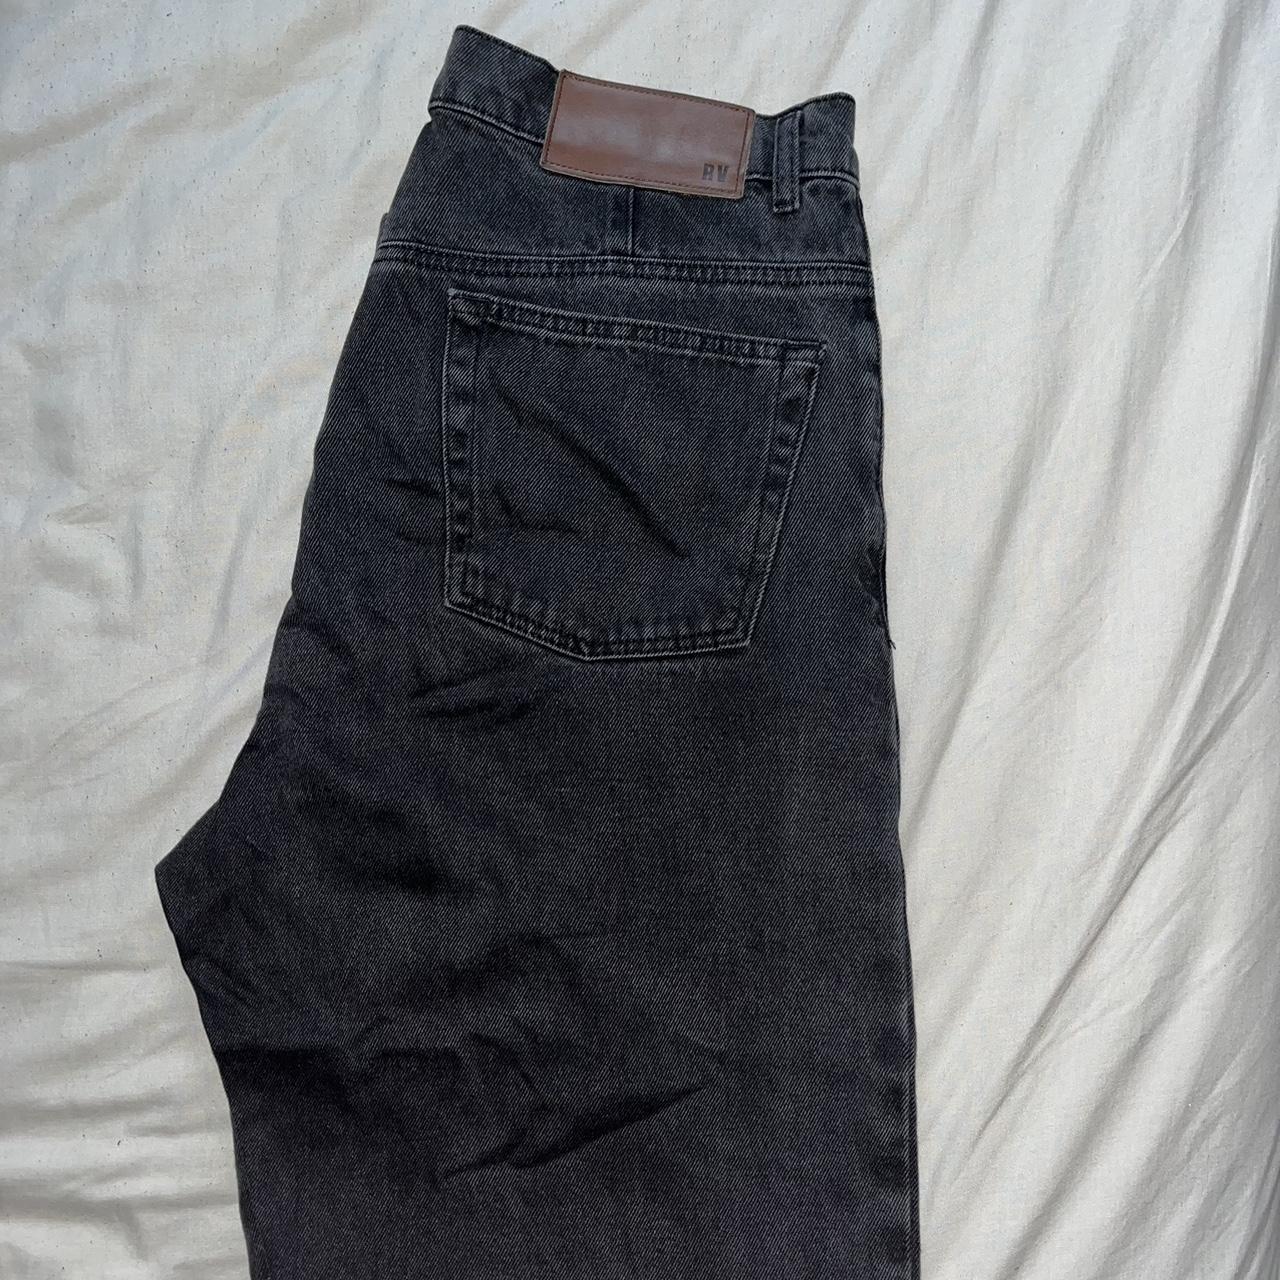 -Reclaimed Vintage y2k style loose fitting jeans,... - Depop